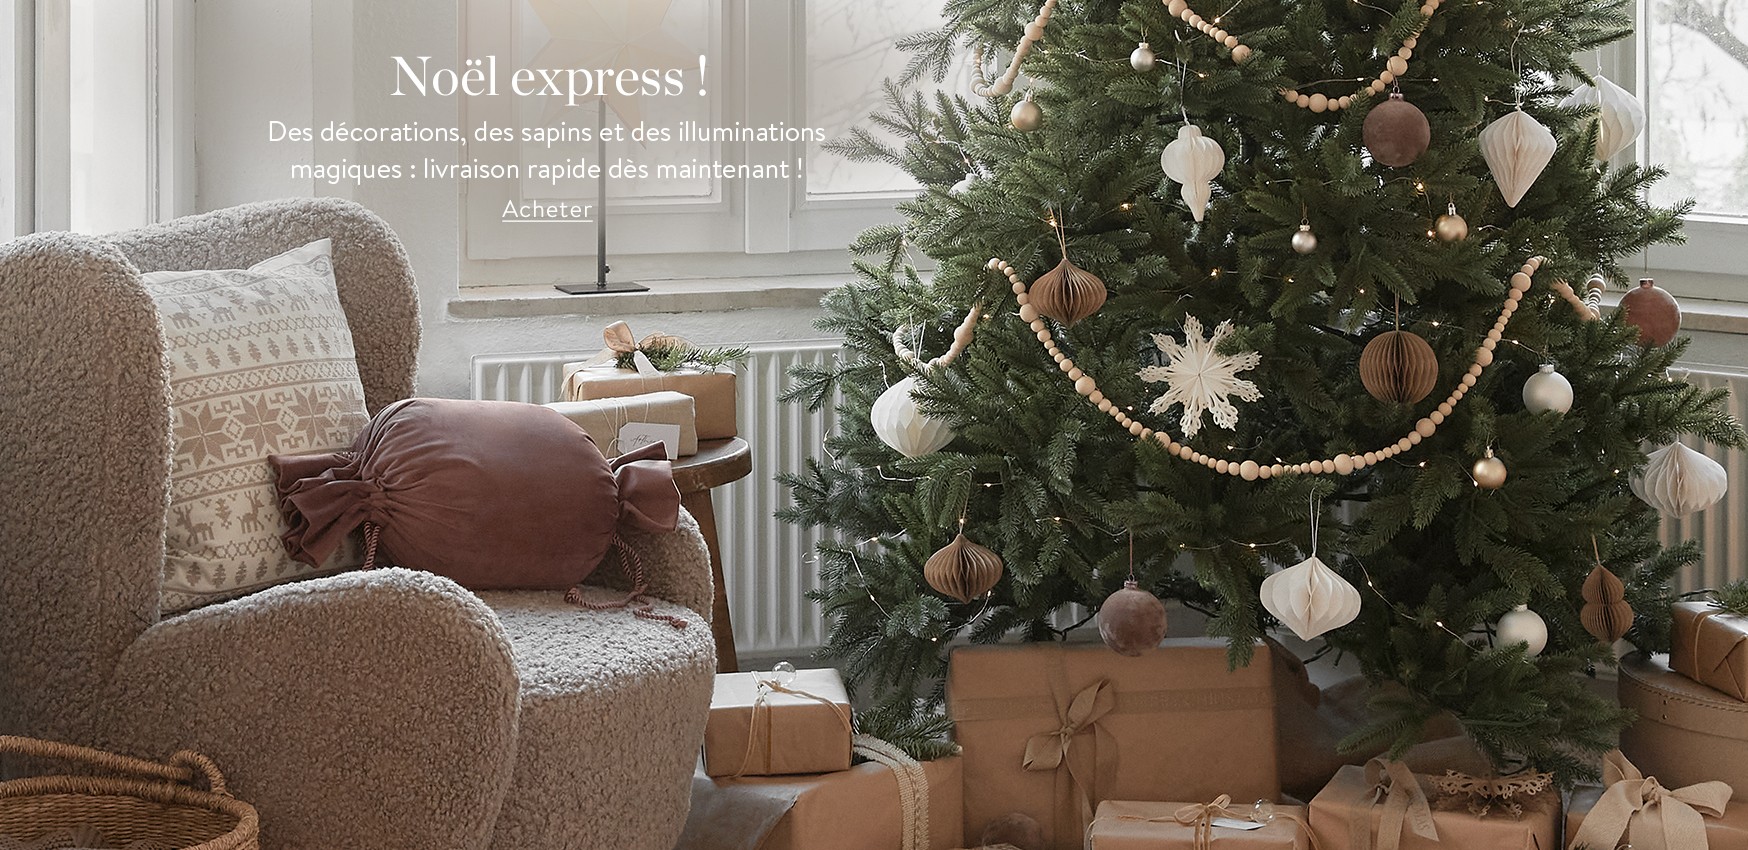 Noël express ! Des décorations, des sapins et des illuminations magiques : livraison rapide dès maintenant !